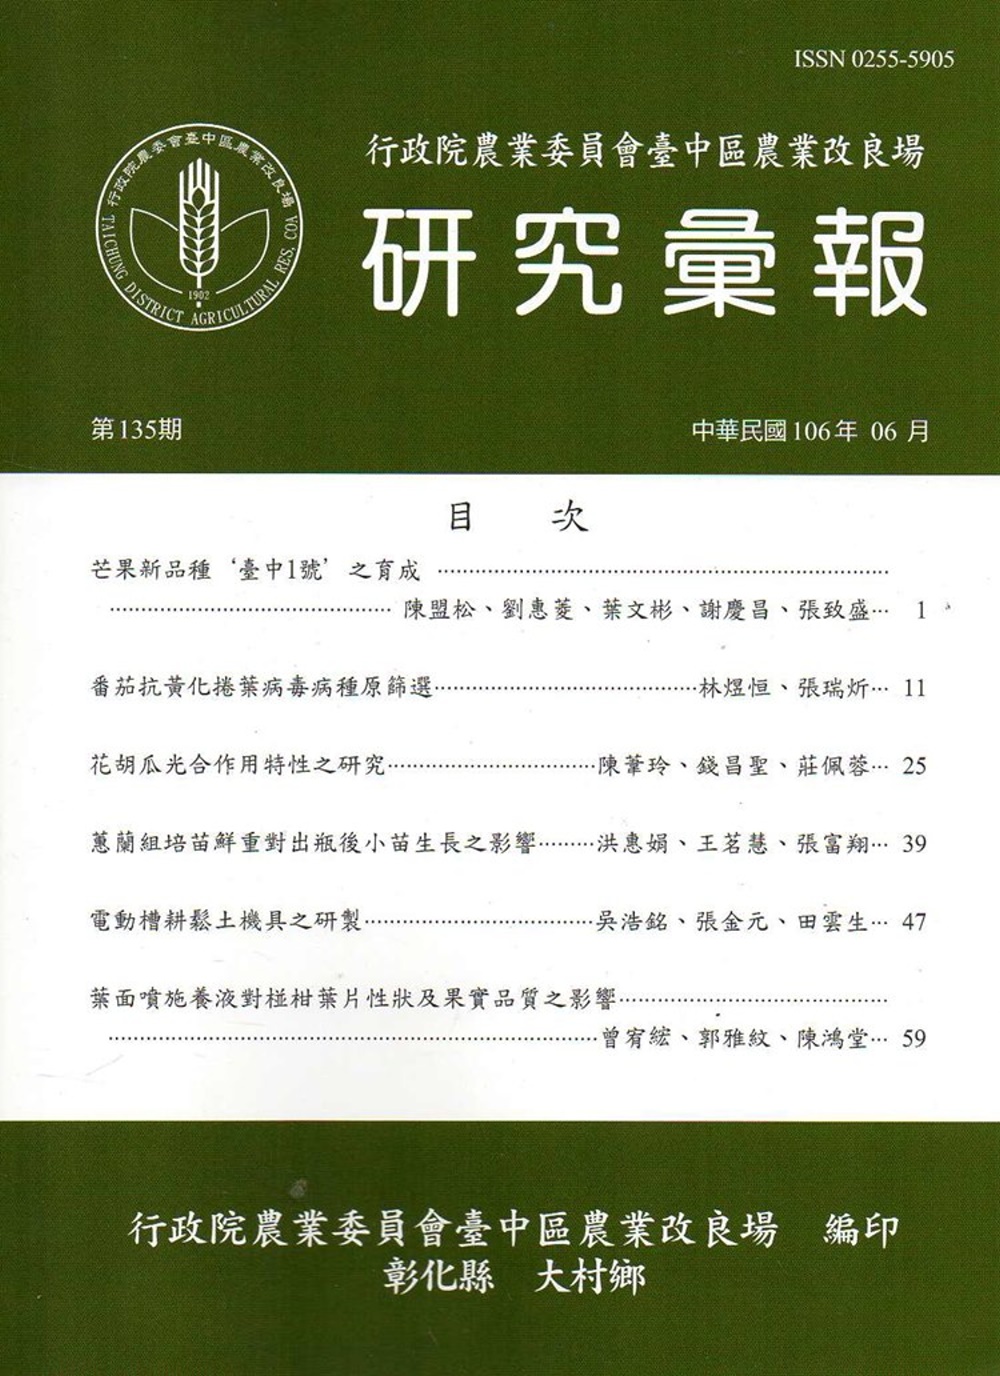 研究彙報135期(106/06)-行政院農業委員會臺中區農業改良場